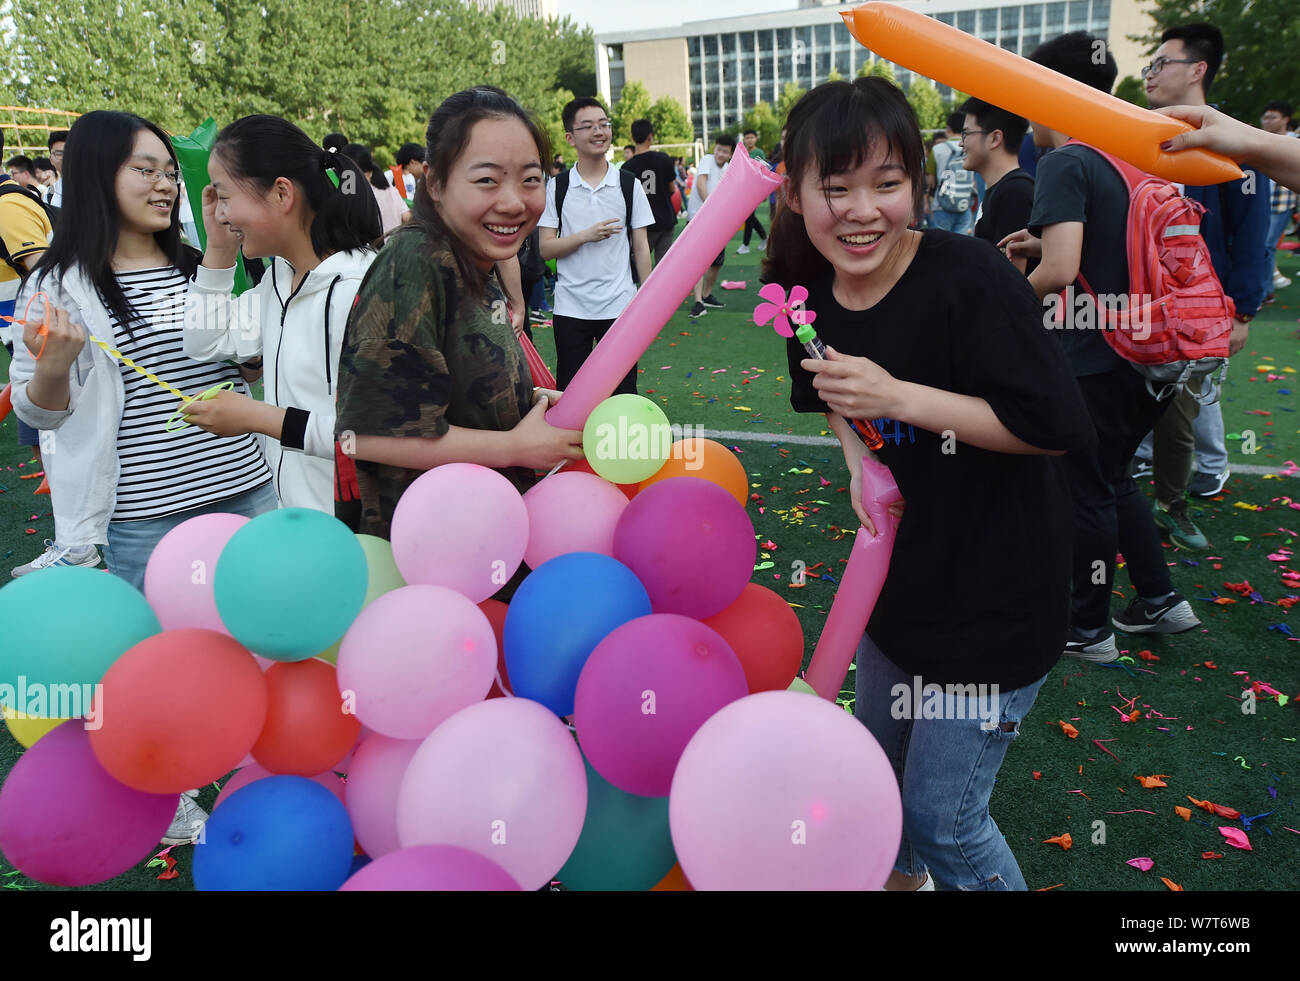 Chinesische Studenten Schritt auf Ballons Stress während einer Aktivität zu entlasten Vor dem nationalen Hochschuleingang Prüfung, auch bekannt als die Gaokao, an einem Senio Stockfoto